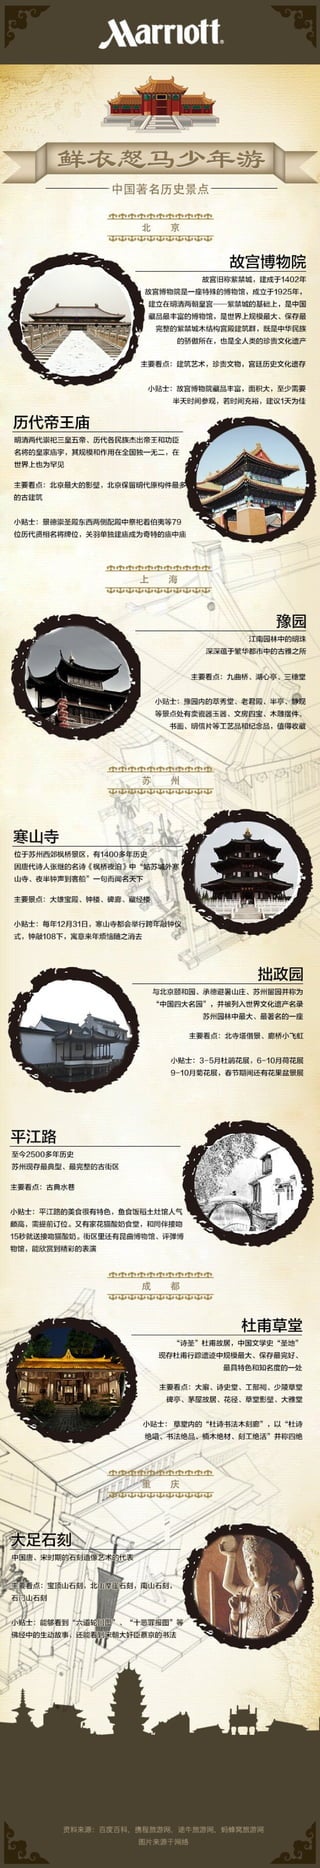 历史名胜:中国著名旅游景点介绍